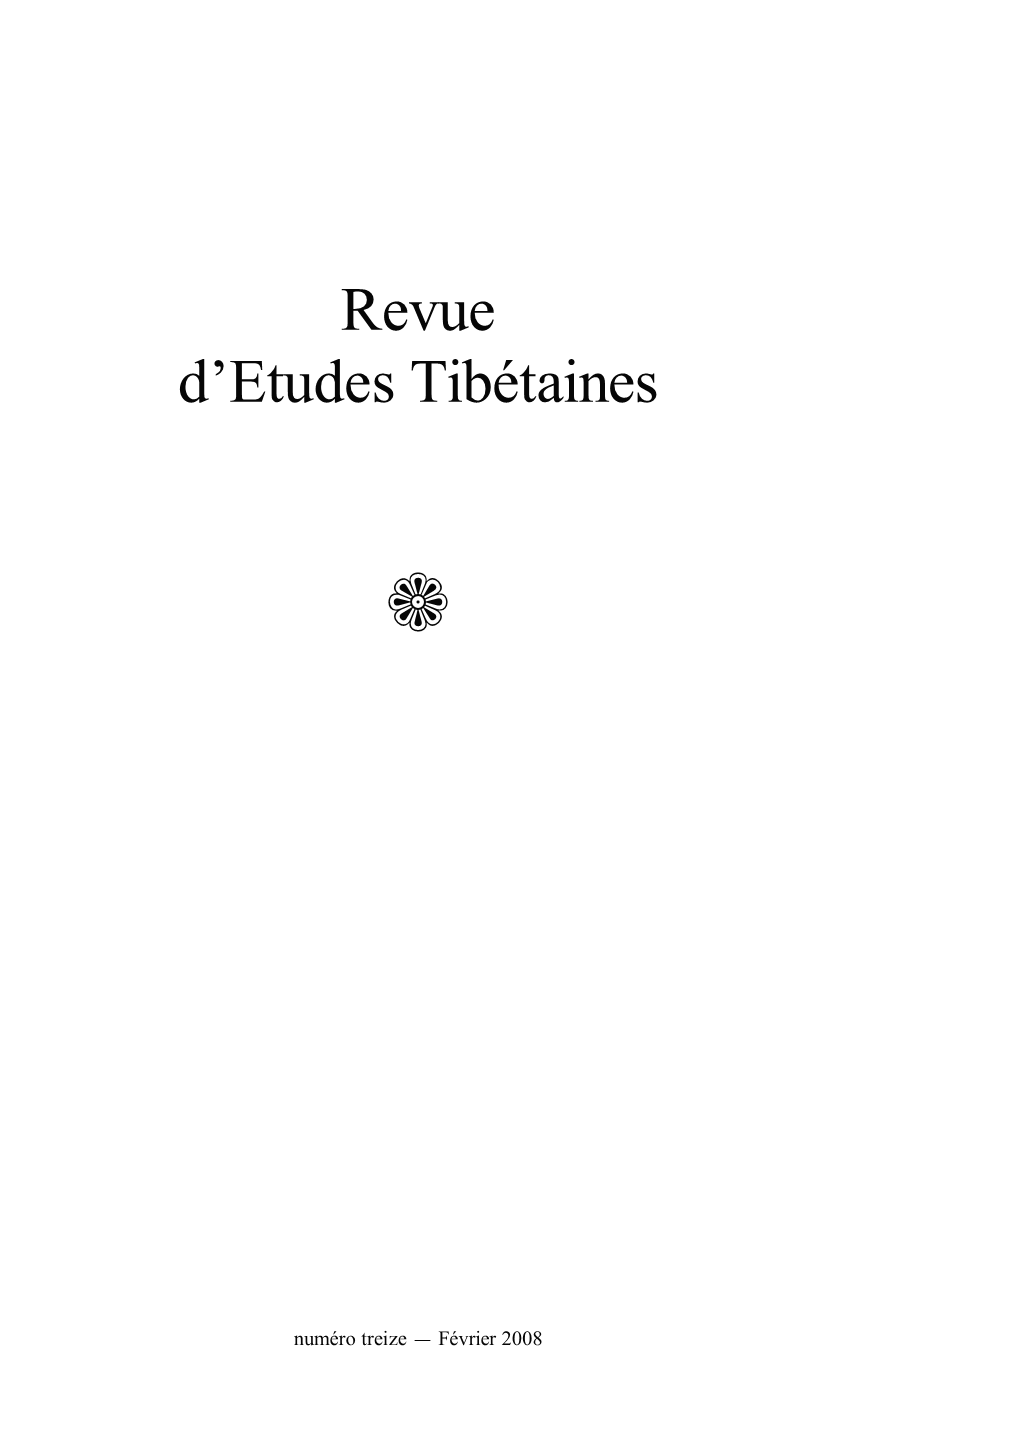 Revue D'etudes Tibétaines Est Publiée Par L'umr 8155 Du CNRS, Paris, Dirigée Par Alain Thote